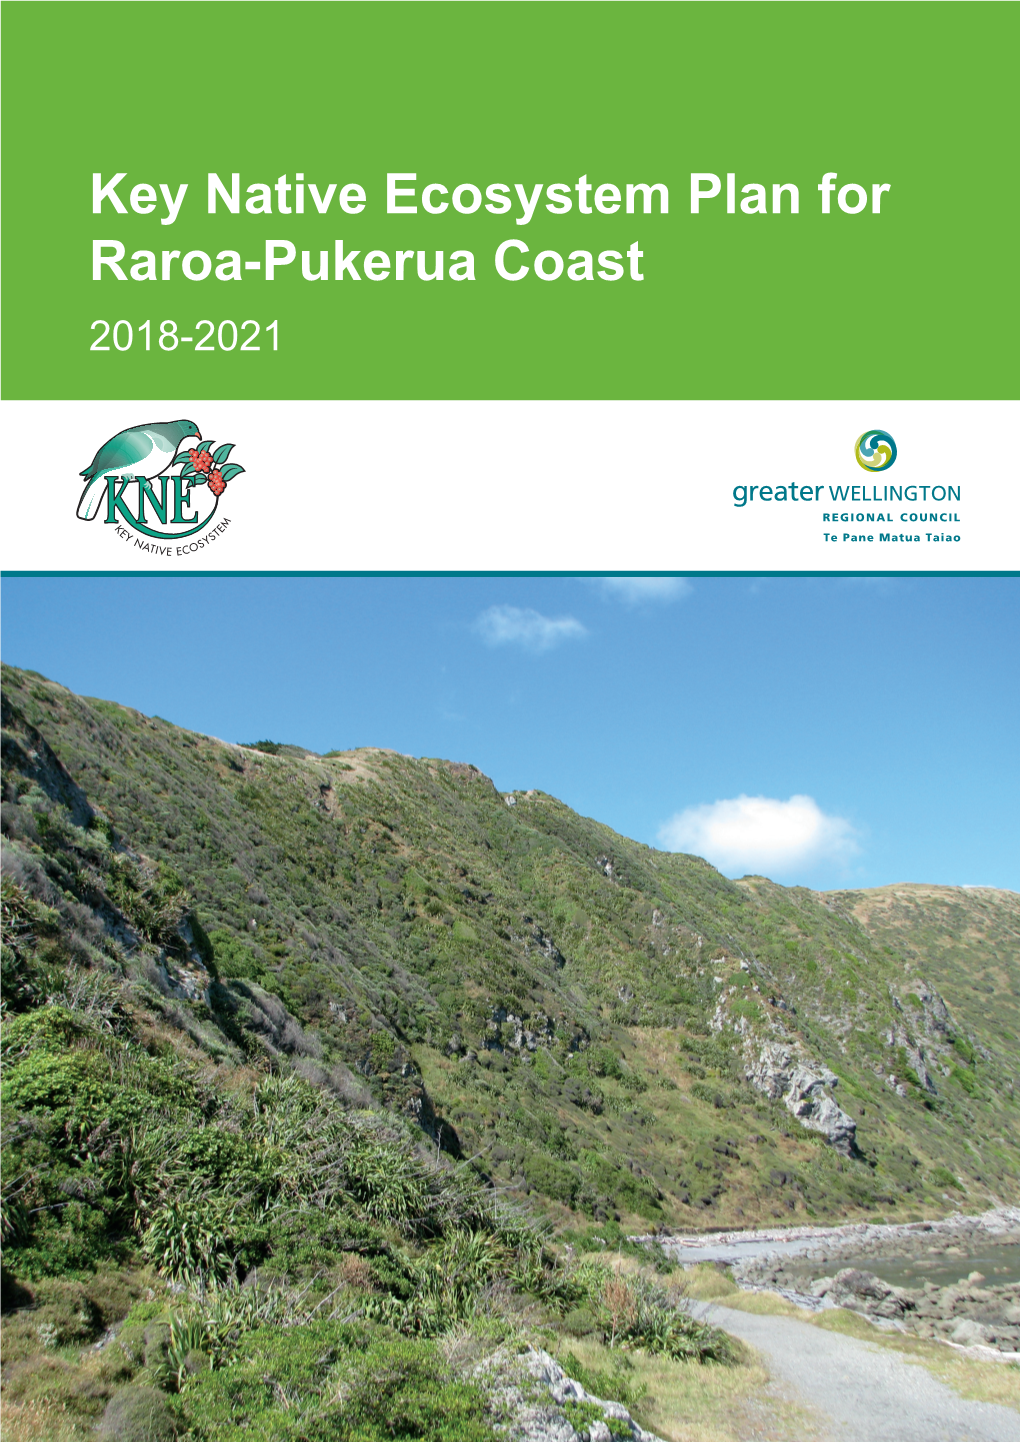 Key Native Ecosystem Plan for Raroa-Pukerua Coast 2018-2021